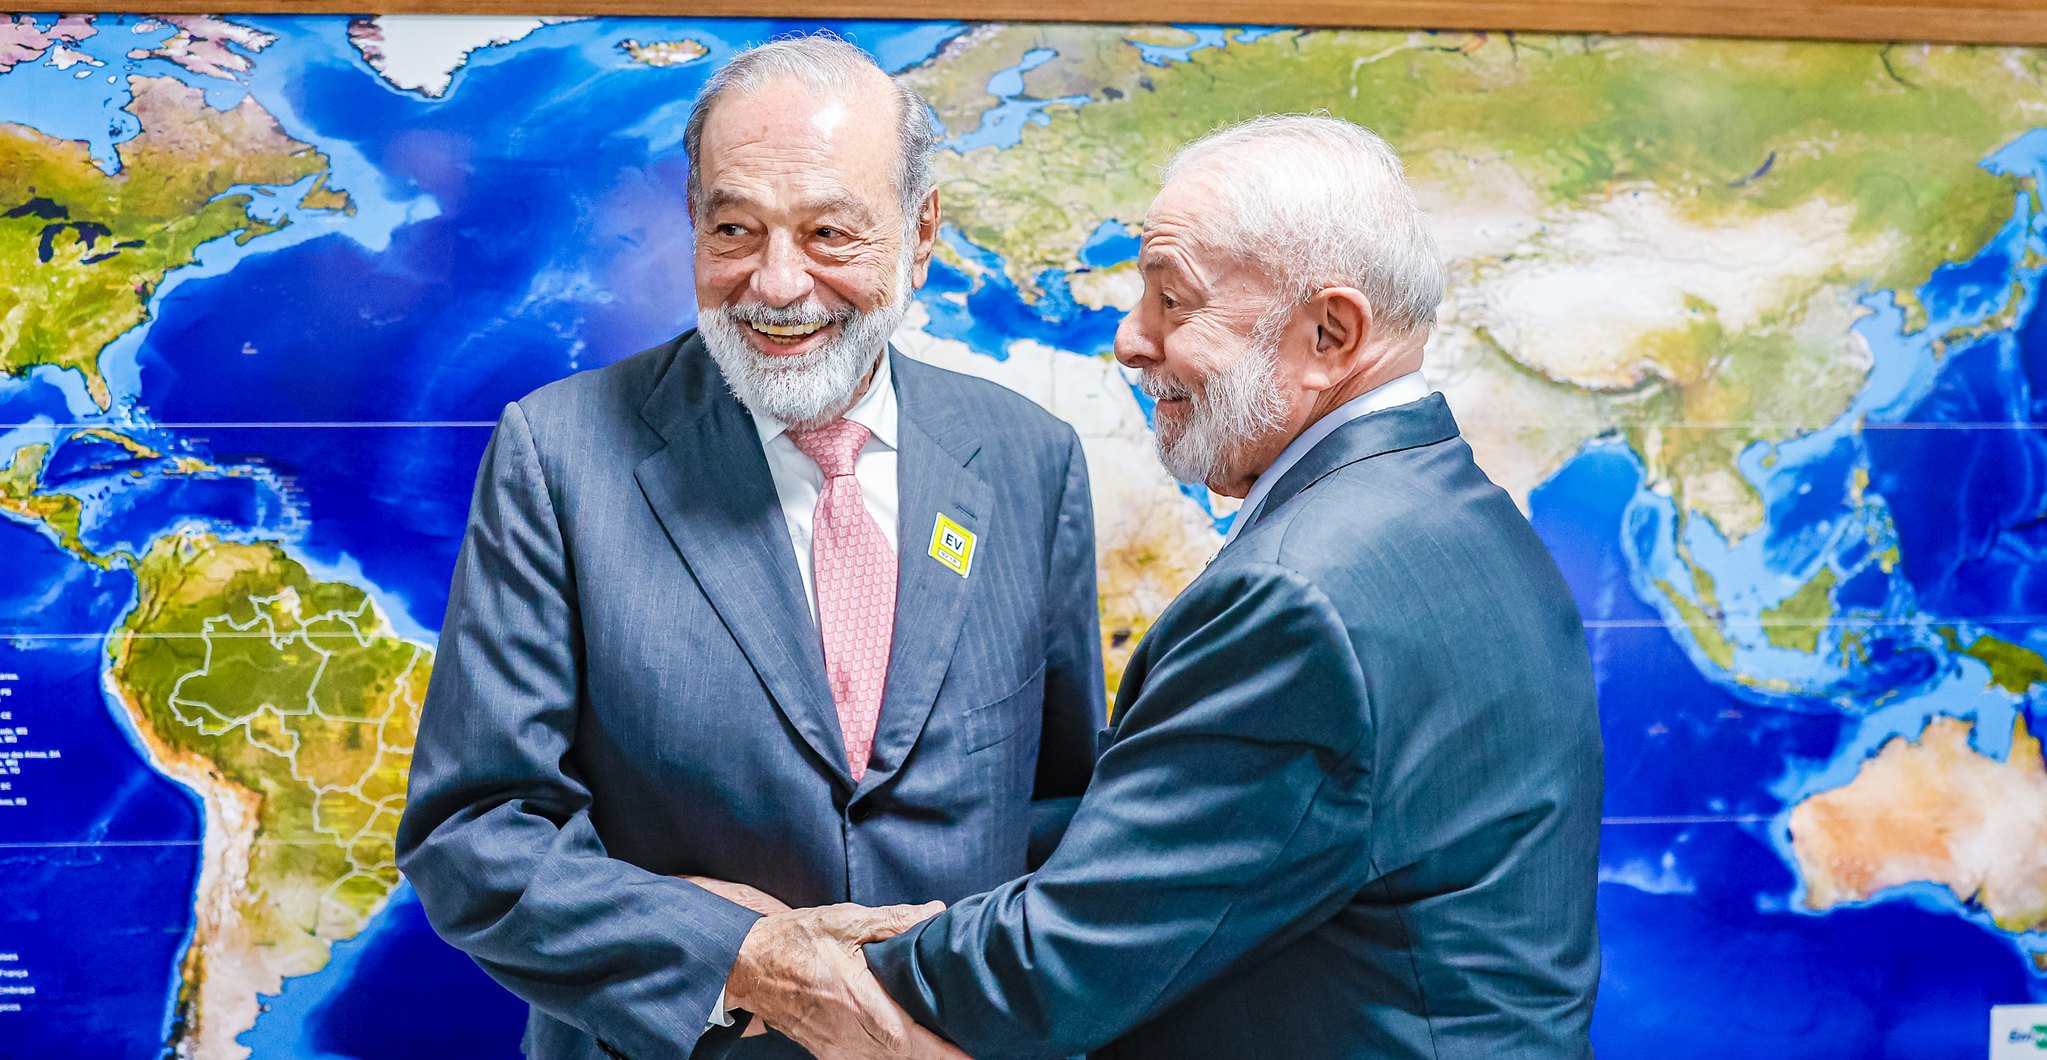 Segundo o Palácio do Planalto, o empresário Carlos Slim e o presidente trataram da expansão da rede de fibra ótica e 5G no território brasileiro